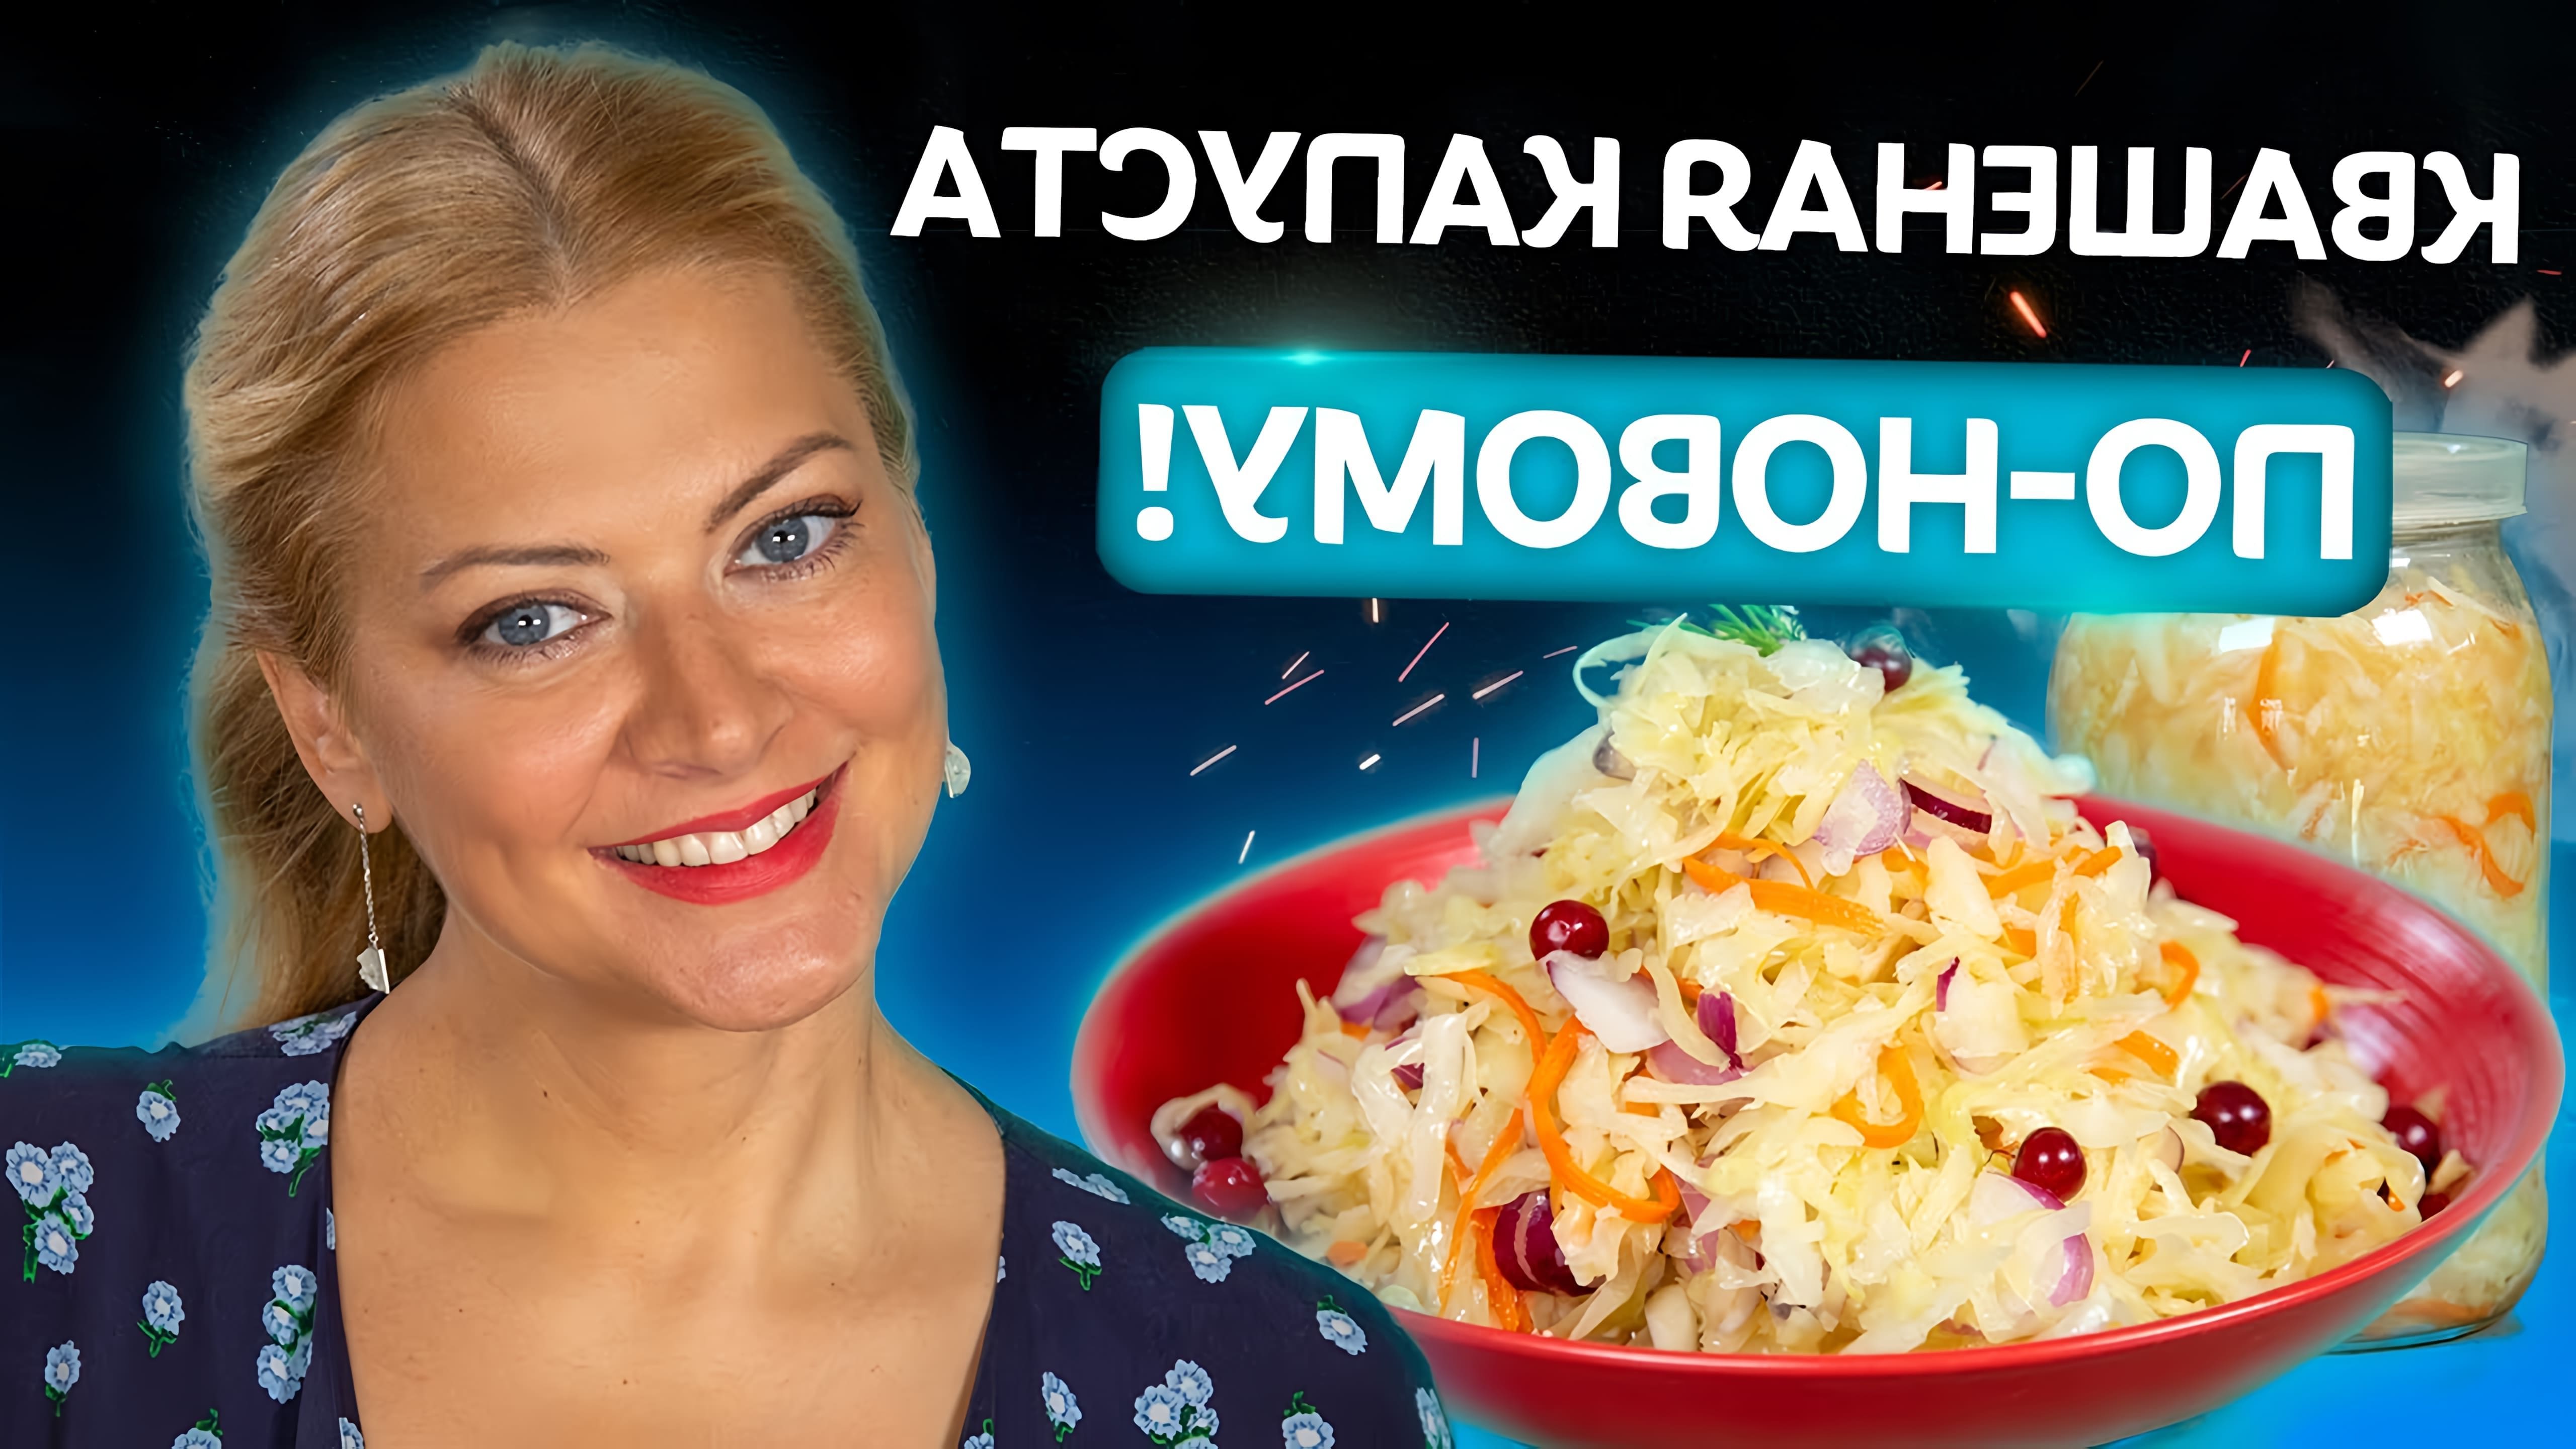 В данном видео Татьяна Литвинова показывает процесс приготовления квашеной капусты